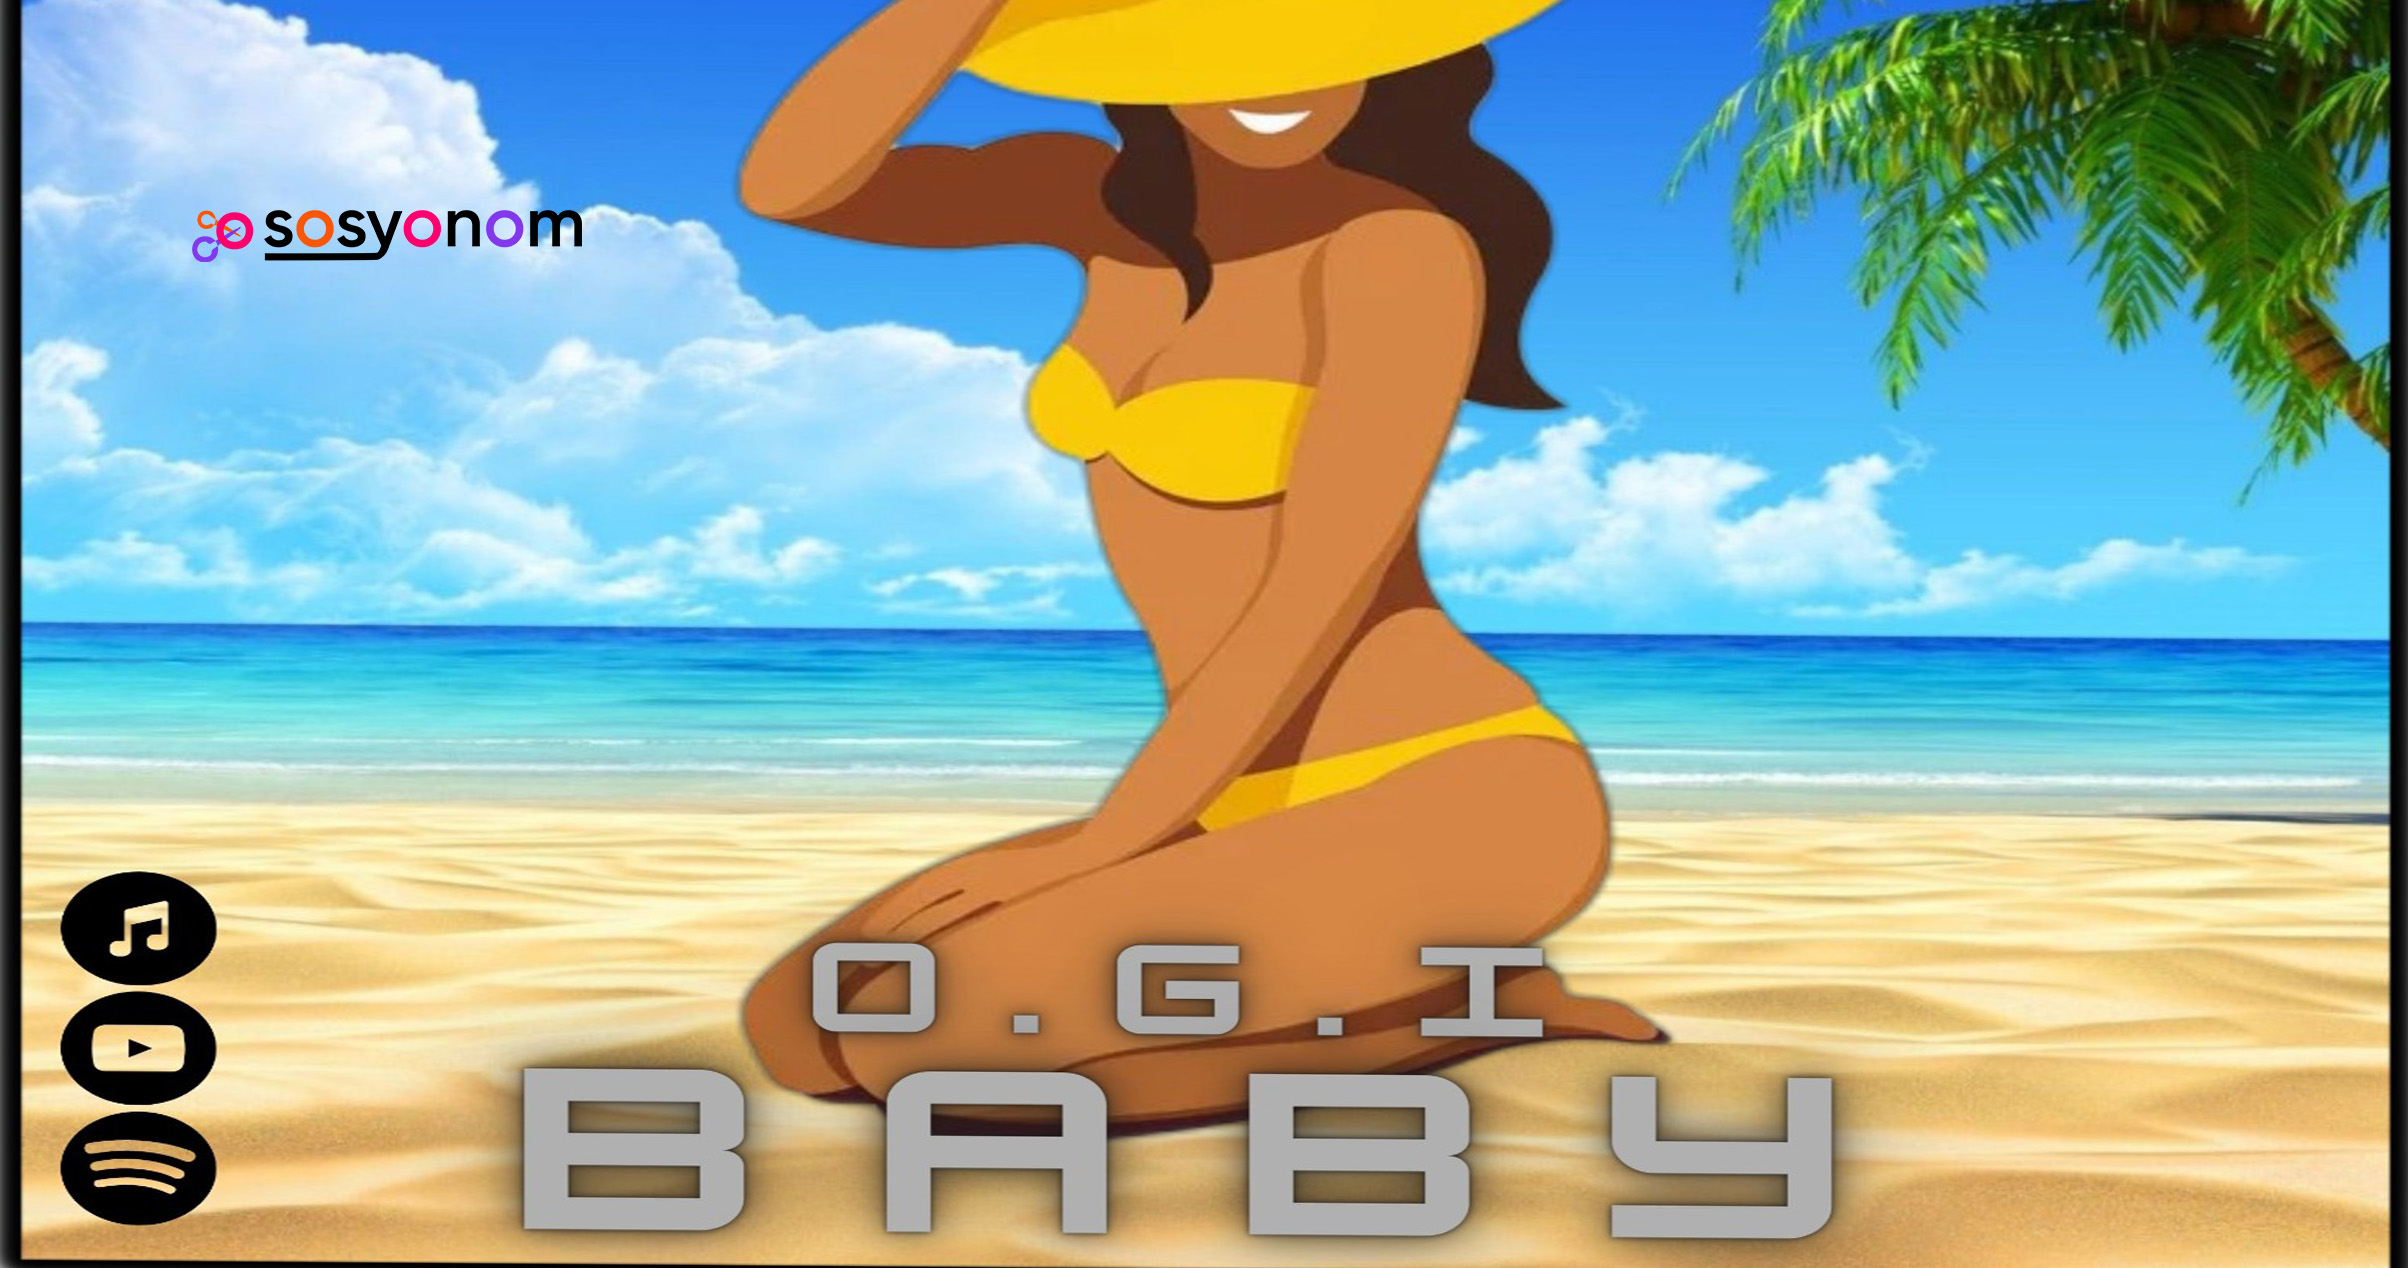 O.G.I Baby Adlı Parçasıyla Müzik Dünyasına Hızlı Bir Giriş Yaptı